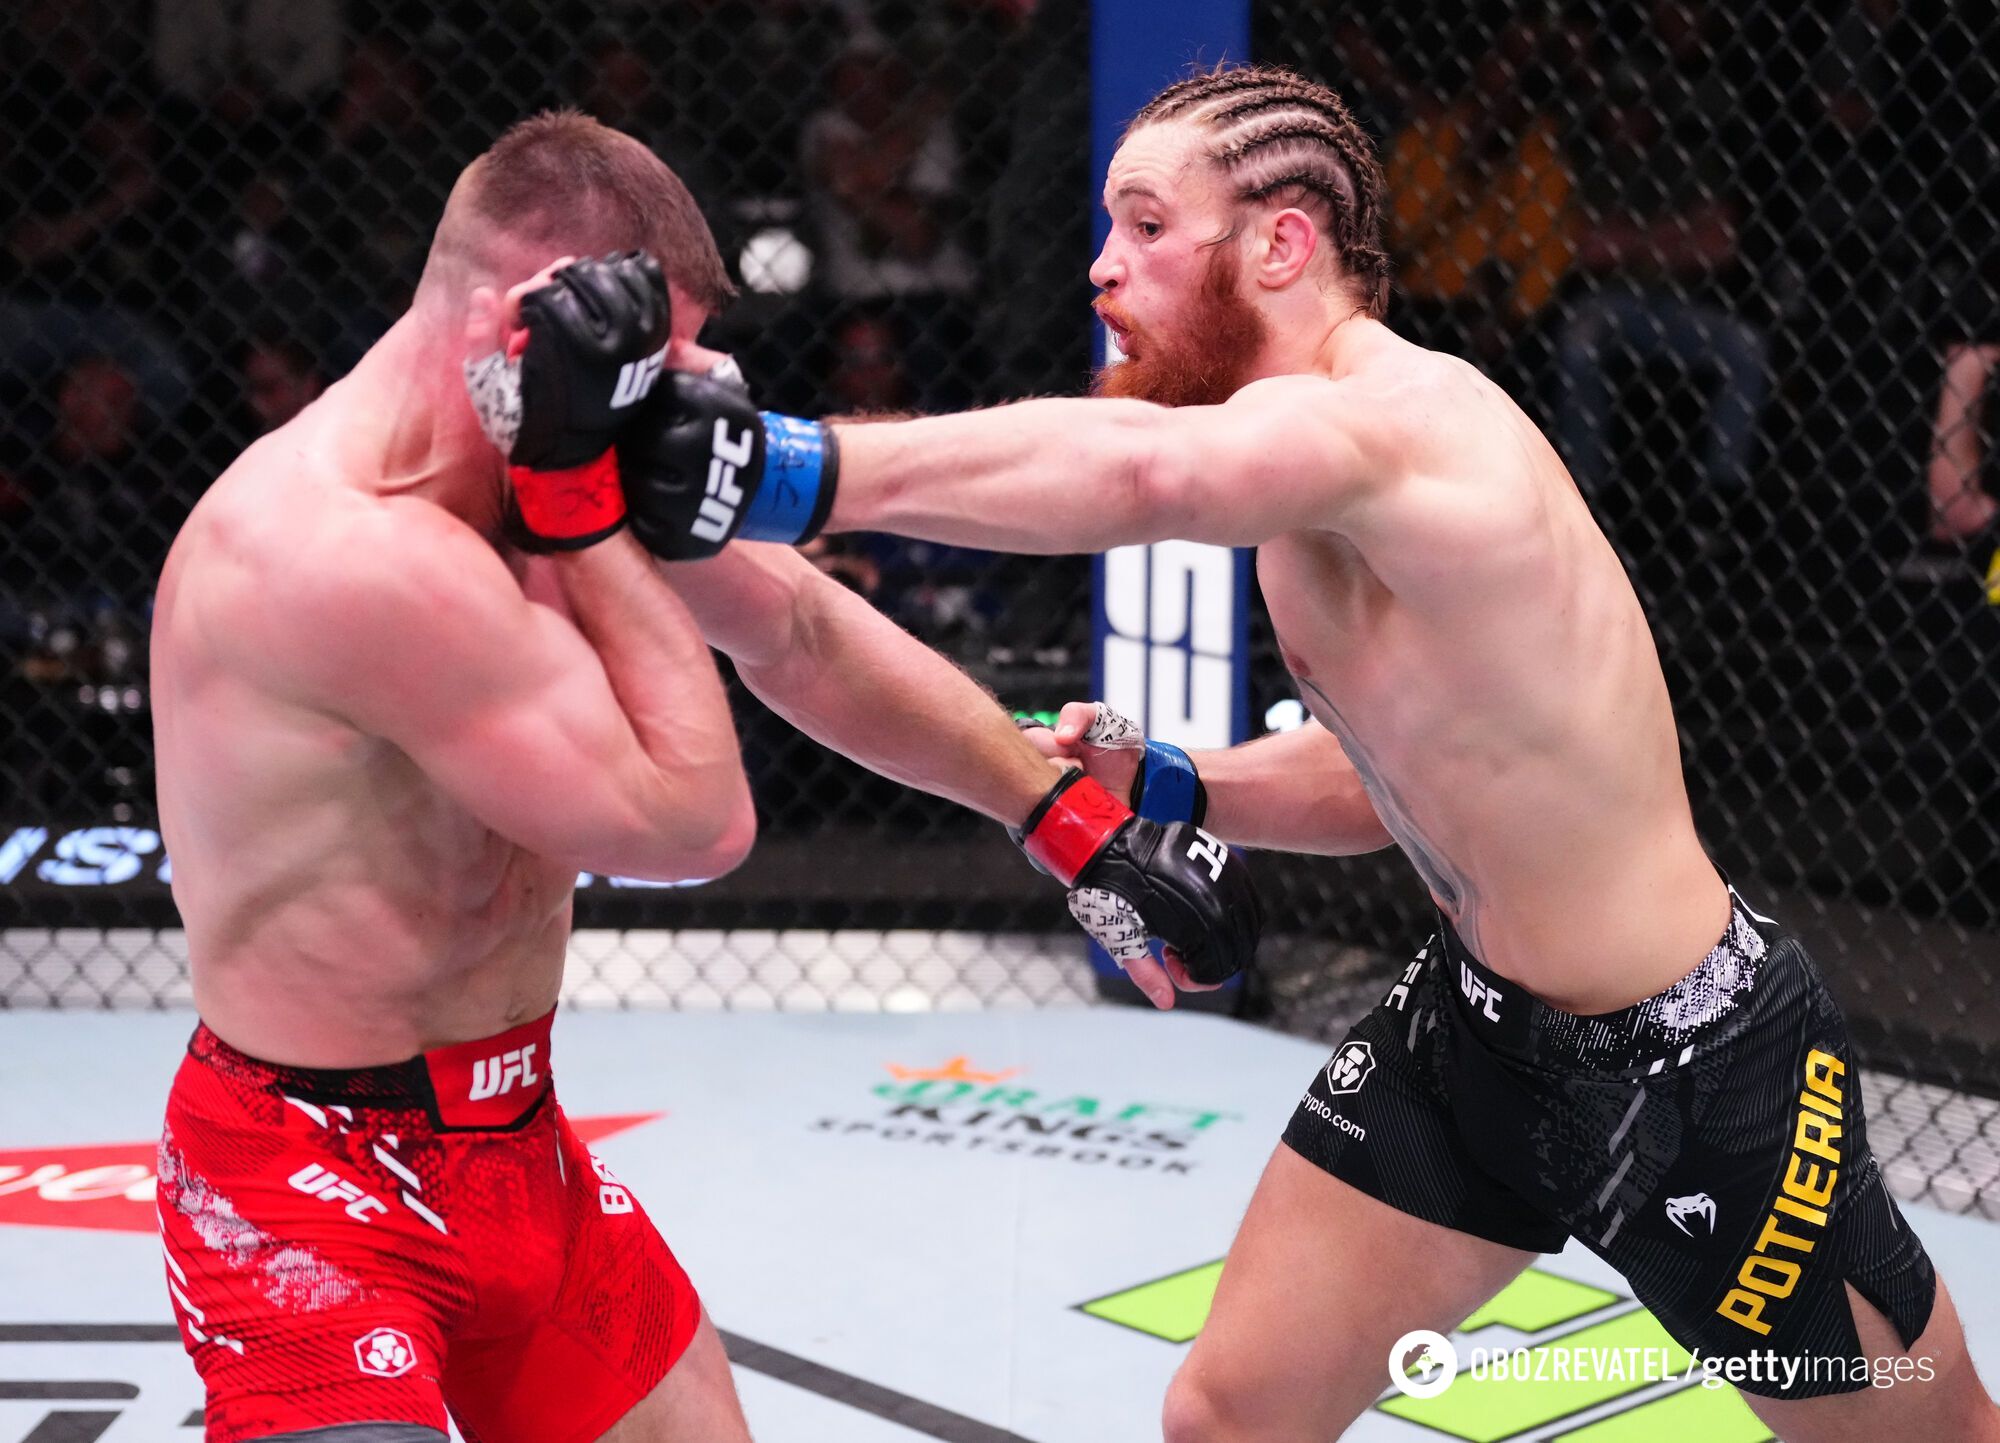 Ukrainiec odniósł sensacyjne zwycięstwo w UFC w walce z knockdownem. Wideo.